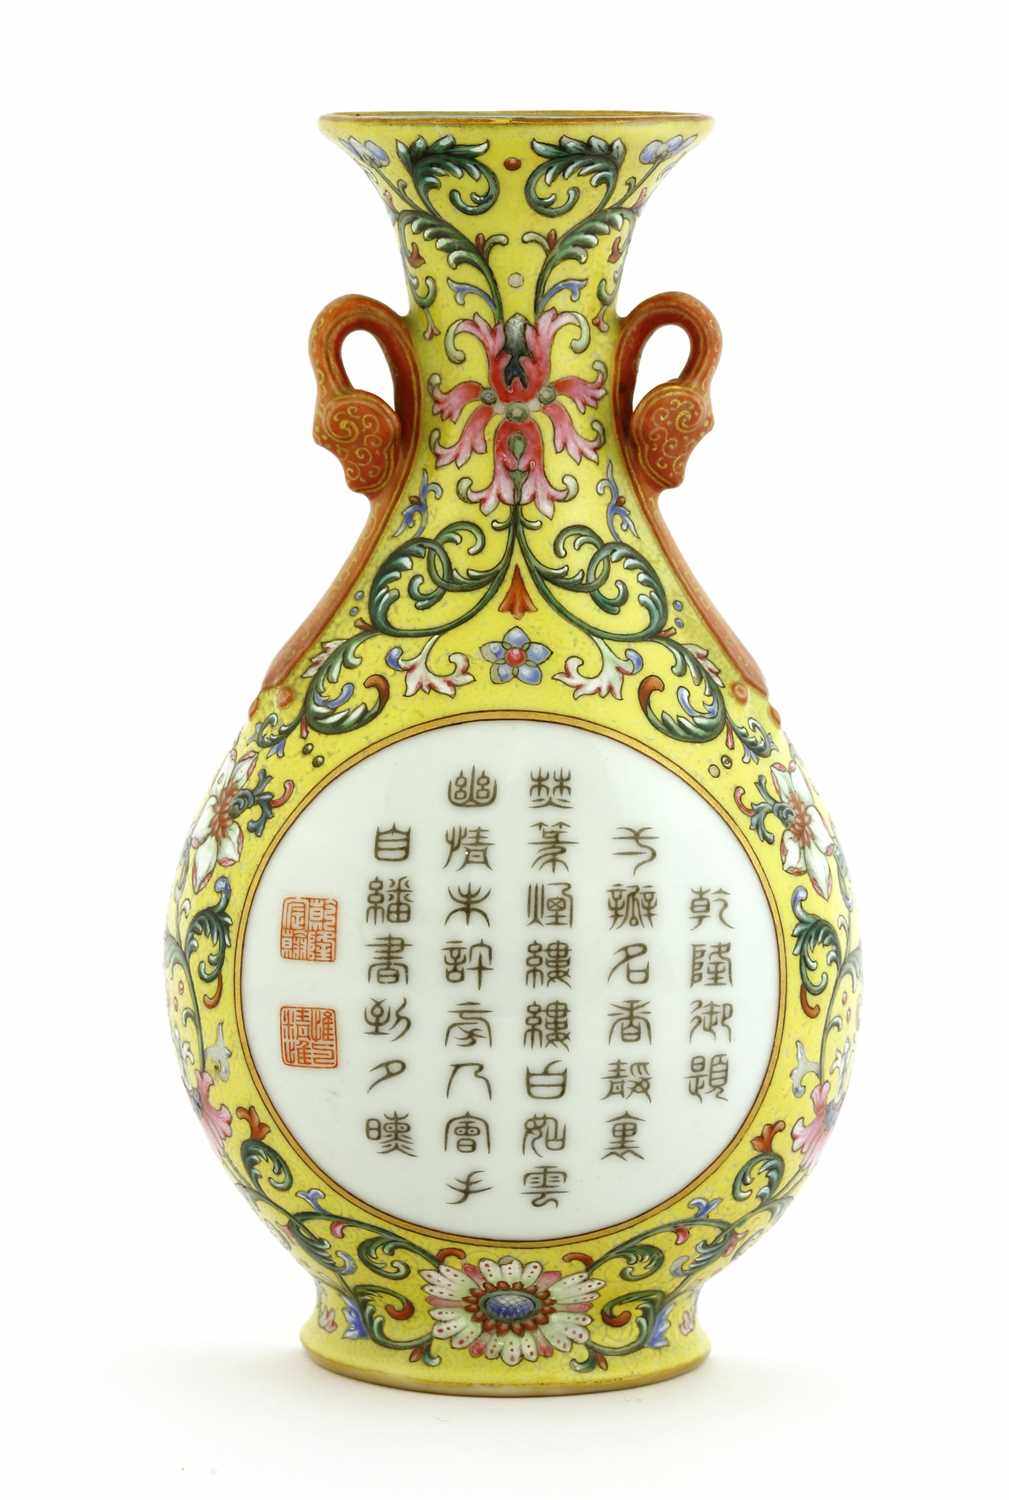 「スーパーデリバリー」 大清時代の壁掛け花入れ器 工芸品